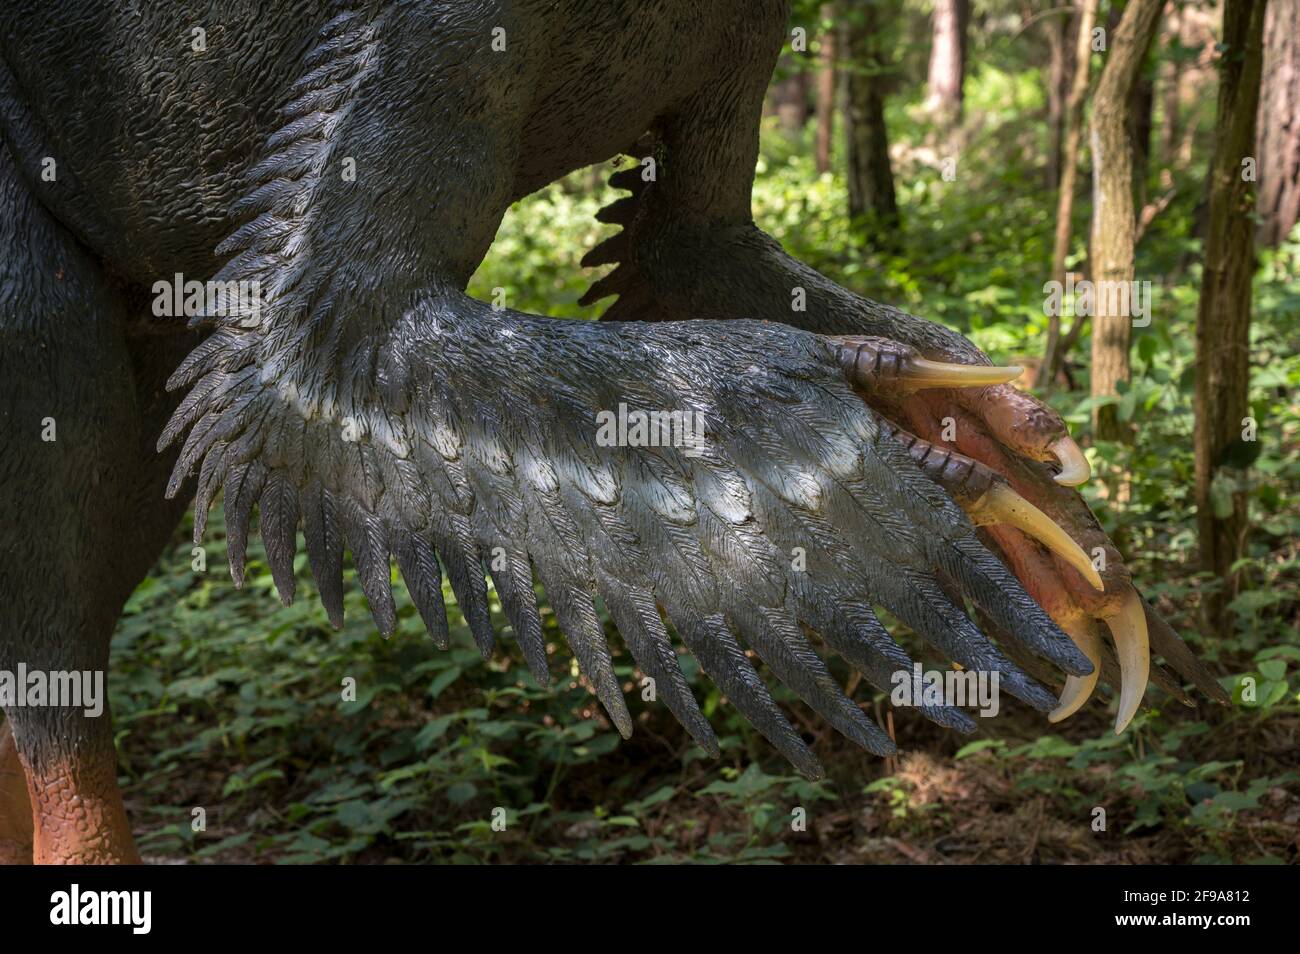 Dinosaurier Utahraptor (ähnlich dem Velociraptor) als Modell im Dinopark Münchehagen bei Hannover. Sie war etwa 7 m lang, wog 500 kg und lebte vor etwa 130 Millionen Jahren (Kreidezeit) in Nordamerika. Er hatte sehr wahrscheinlich ein Gefieder. Die lange Sichelkralle am Hinterfuß ist typisch für räuberische Dinosaurier wie den Utahraptor. Stockfoto